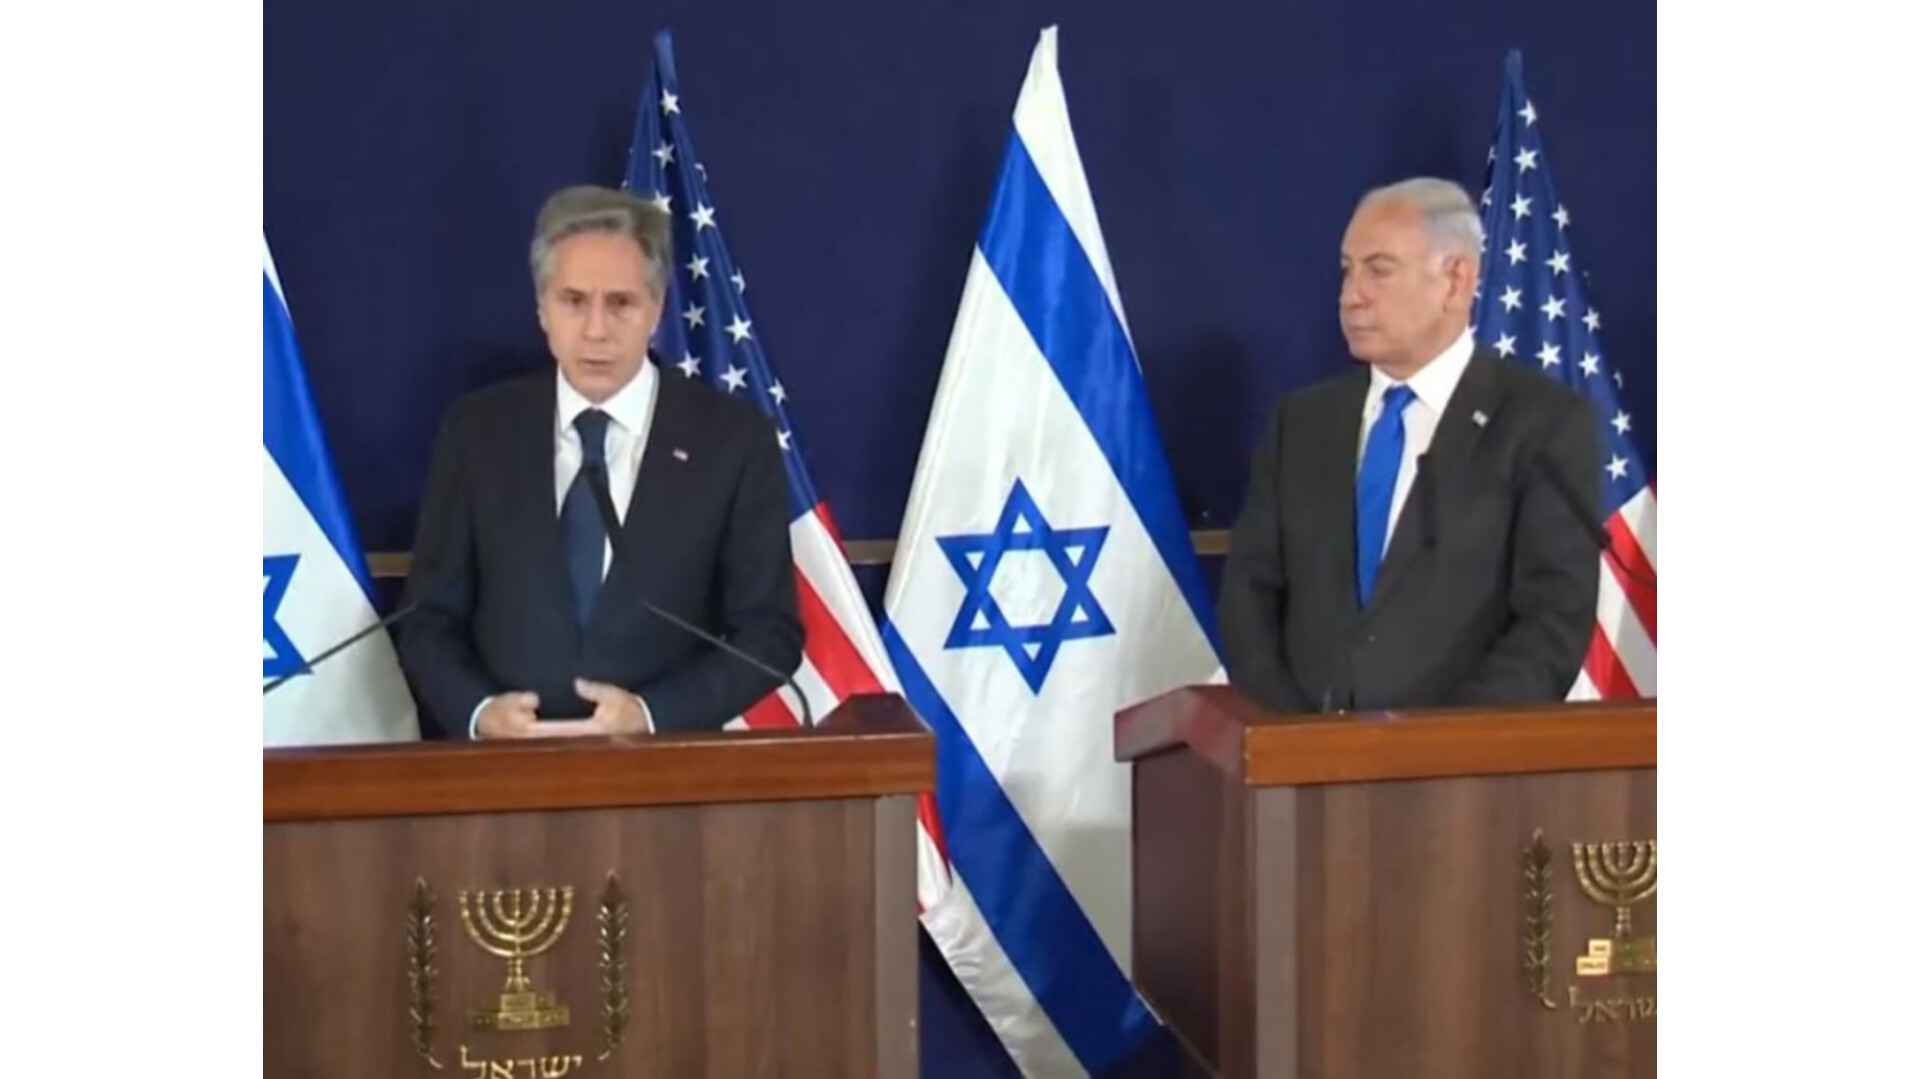 इजराइल की मदद में चार कदम आगे अमेरिका, क्या हैं सहायता के विकल्प?